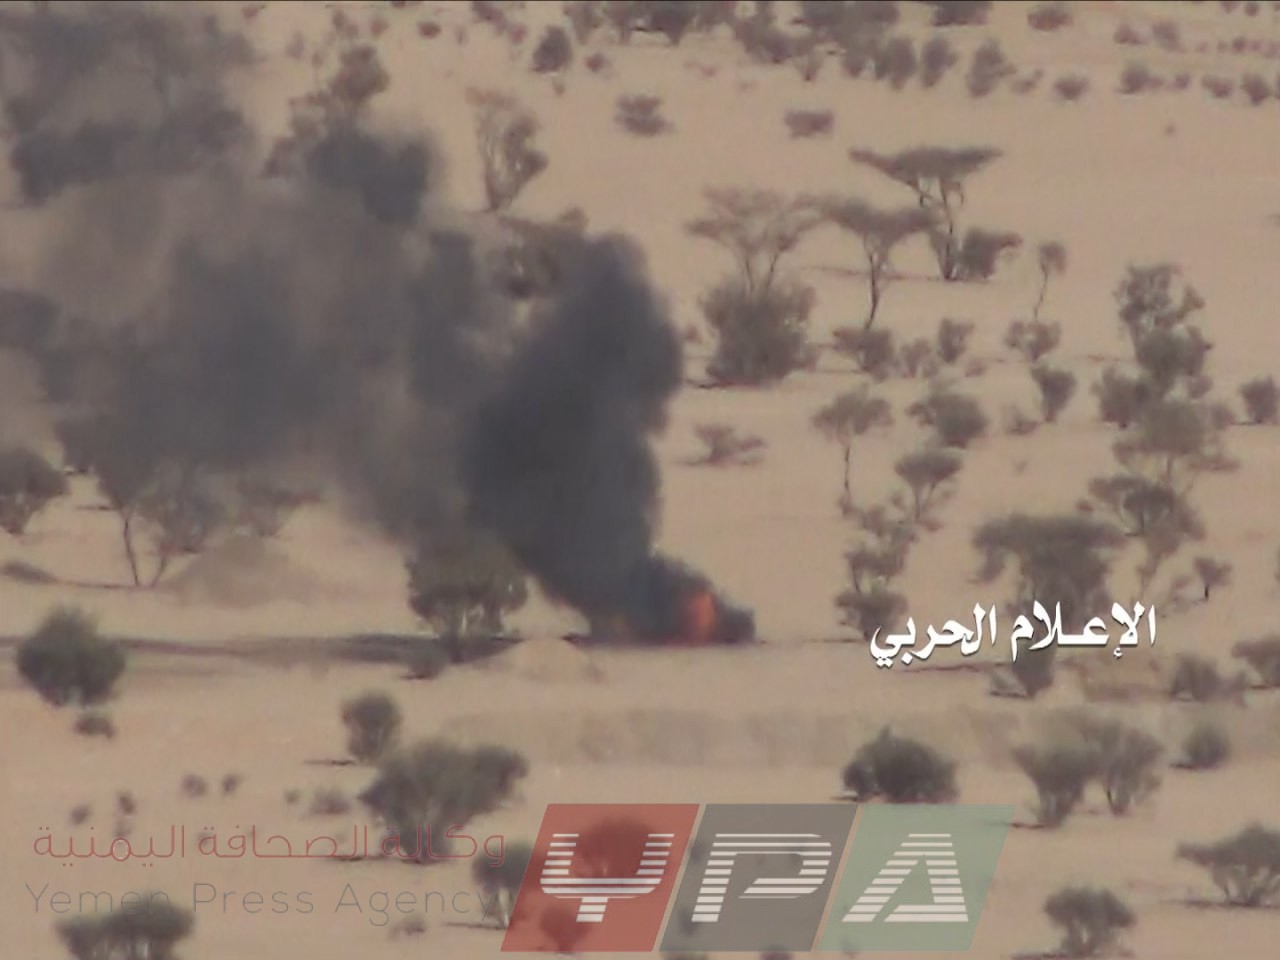 آلية ثالثة لقوات التحالف اثناء احتراقها في جبهة المهاشمة بمحافظة الجوف